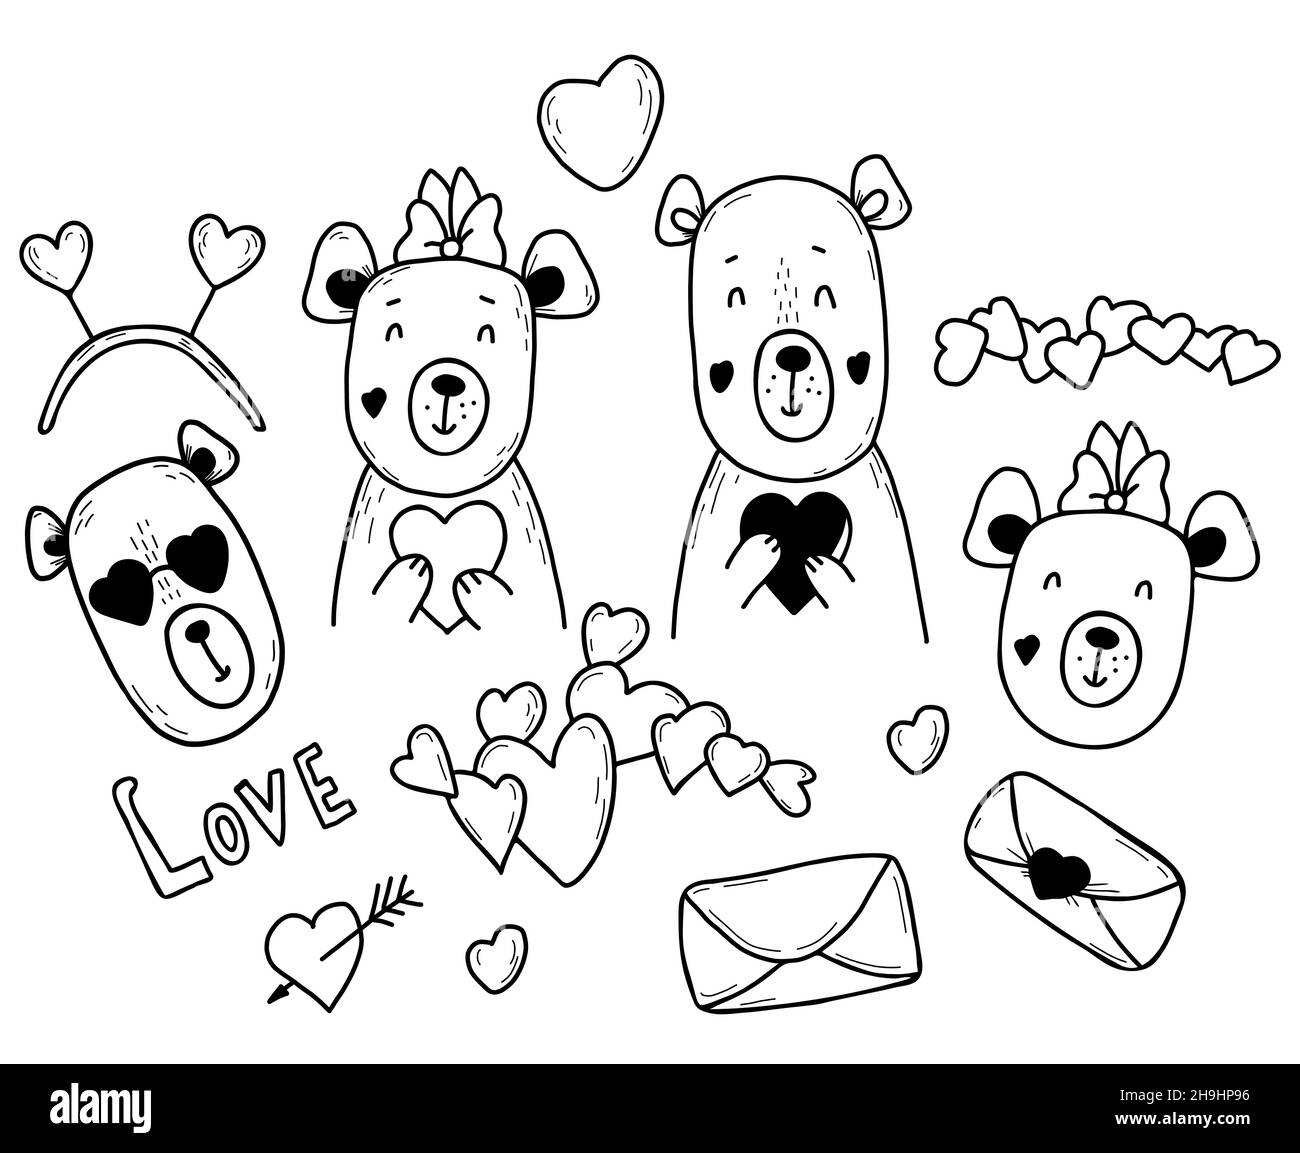 Set von niedlichen Bären in der Liebe. Mädchen und Junge Bär, Herz und Brief. Vektorgrafik. Isolierte Elemente im Stil von Hand gezeichneten linearen Kritzeln für Design Stock Vektor